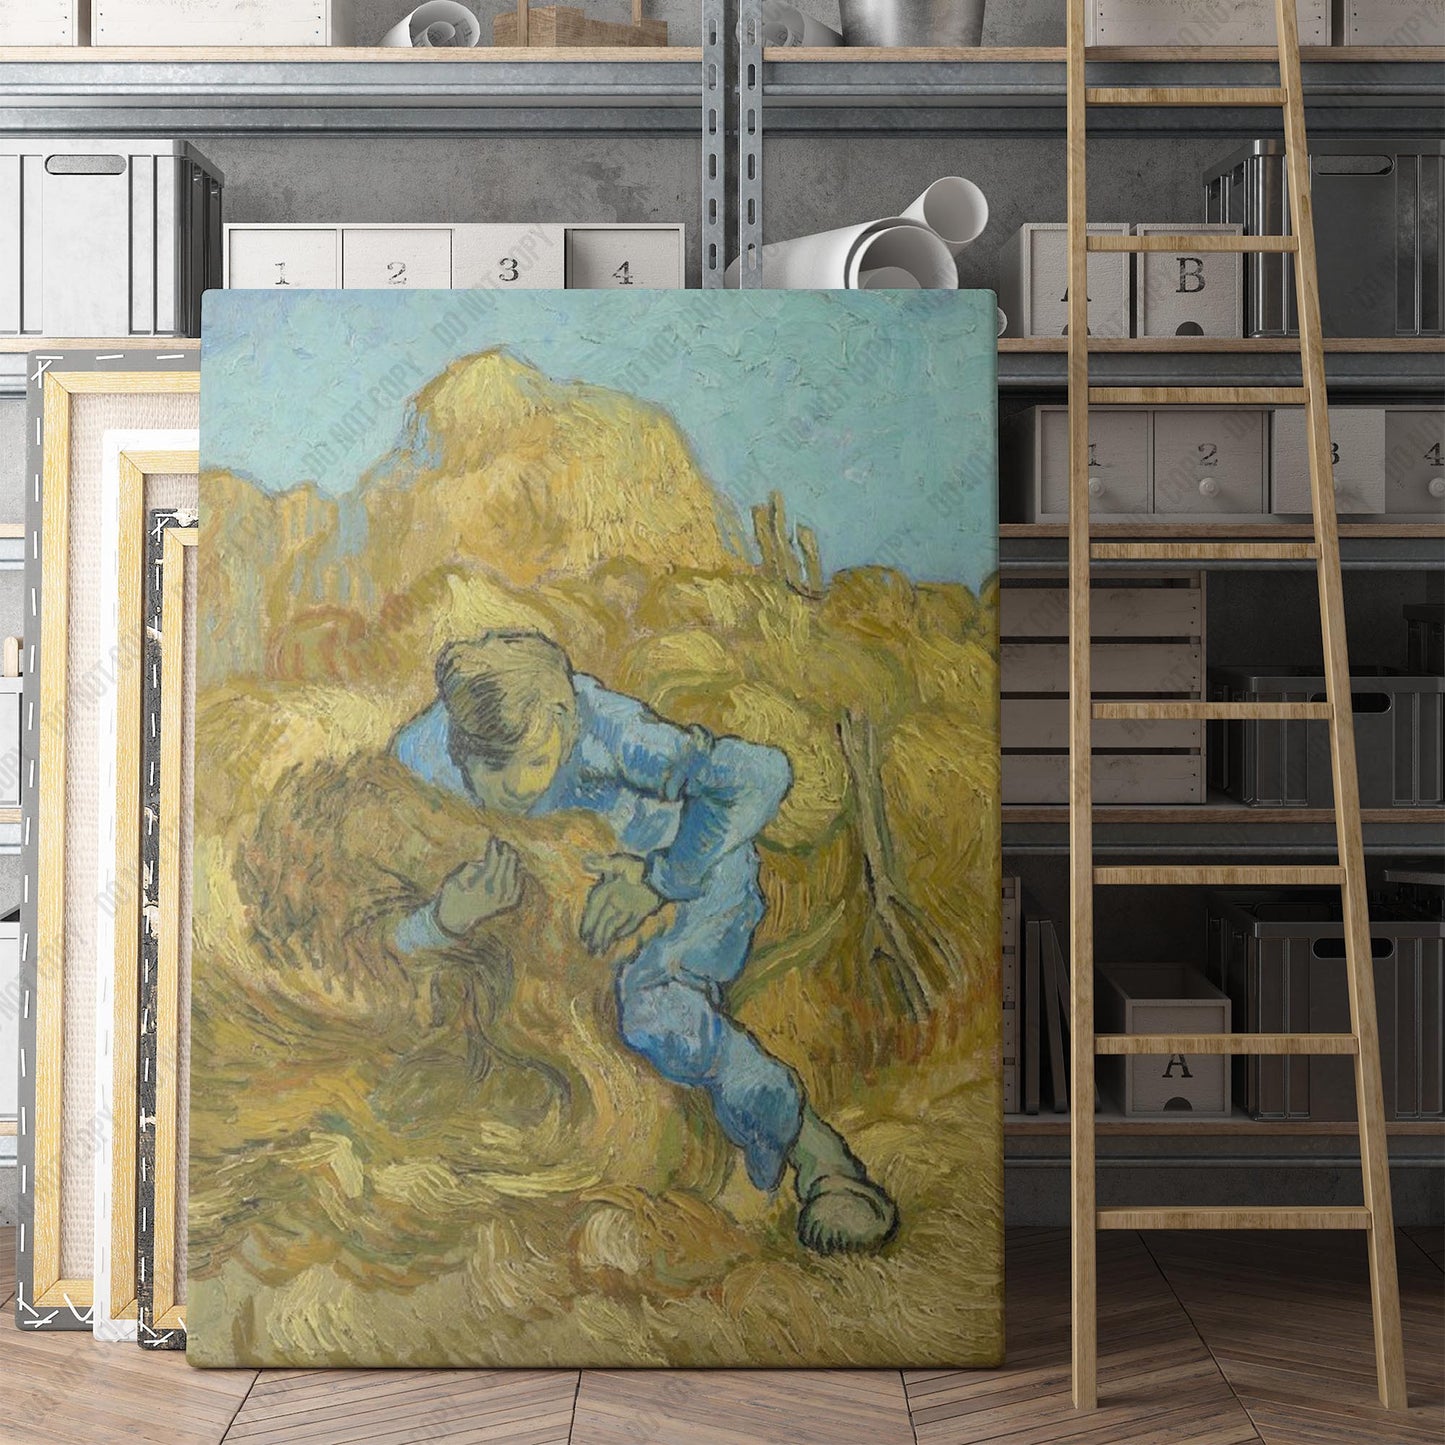 The Sheaf-Binder (1889) by Van Gogh